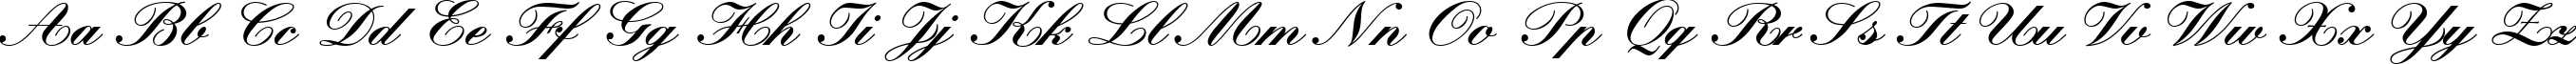 Пример написания английского алфавита шрифтом KunstlerschreibschDBol